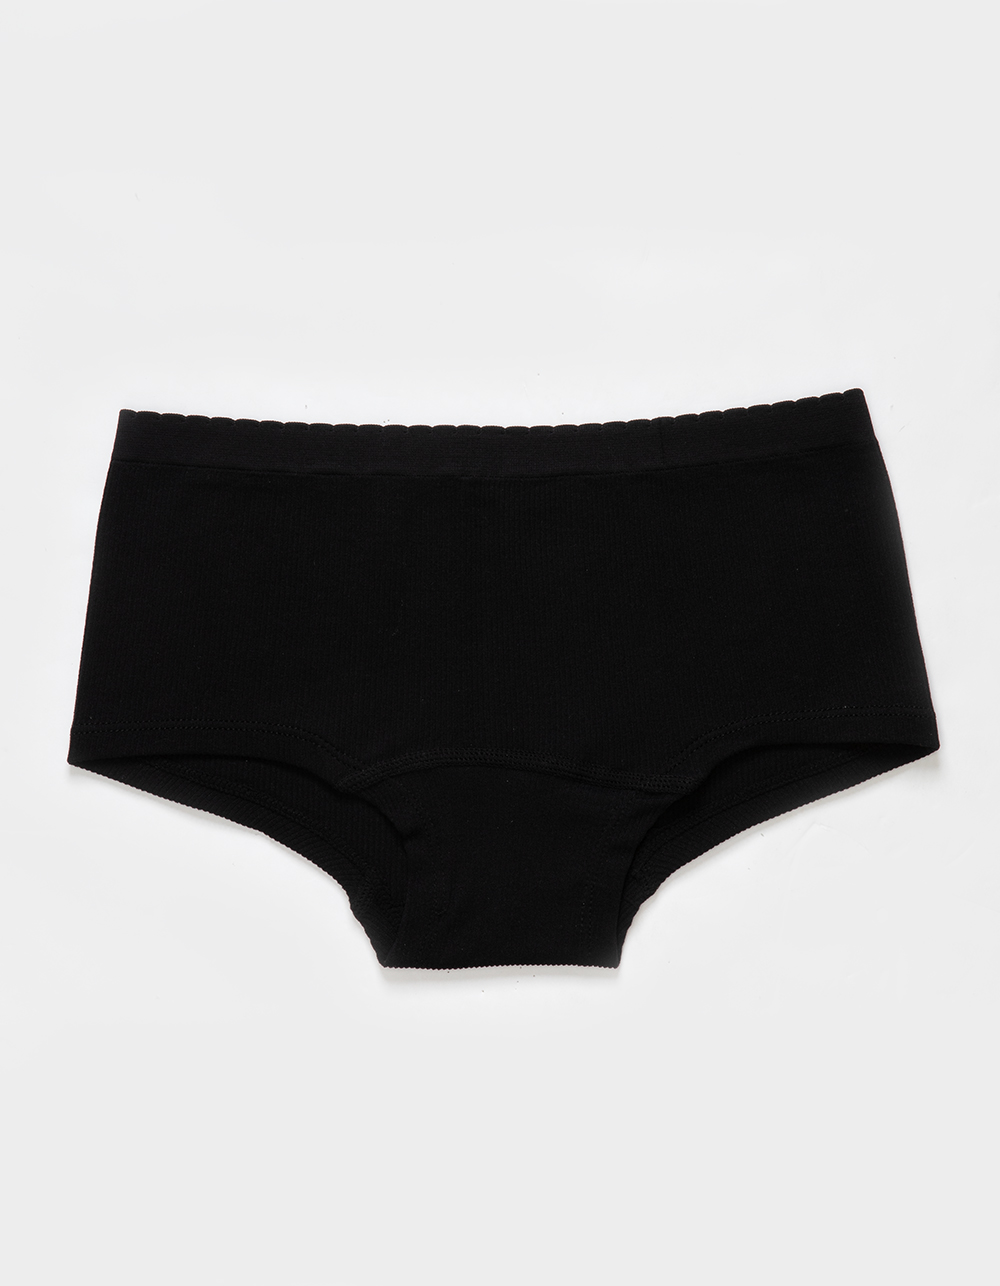 FULL TILT Seamless Boyshort Panties - BLACK